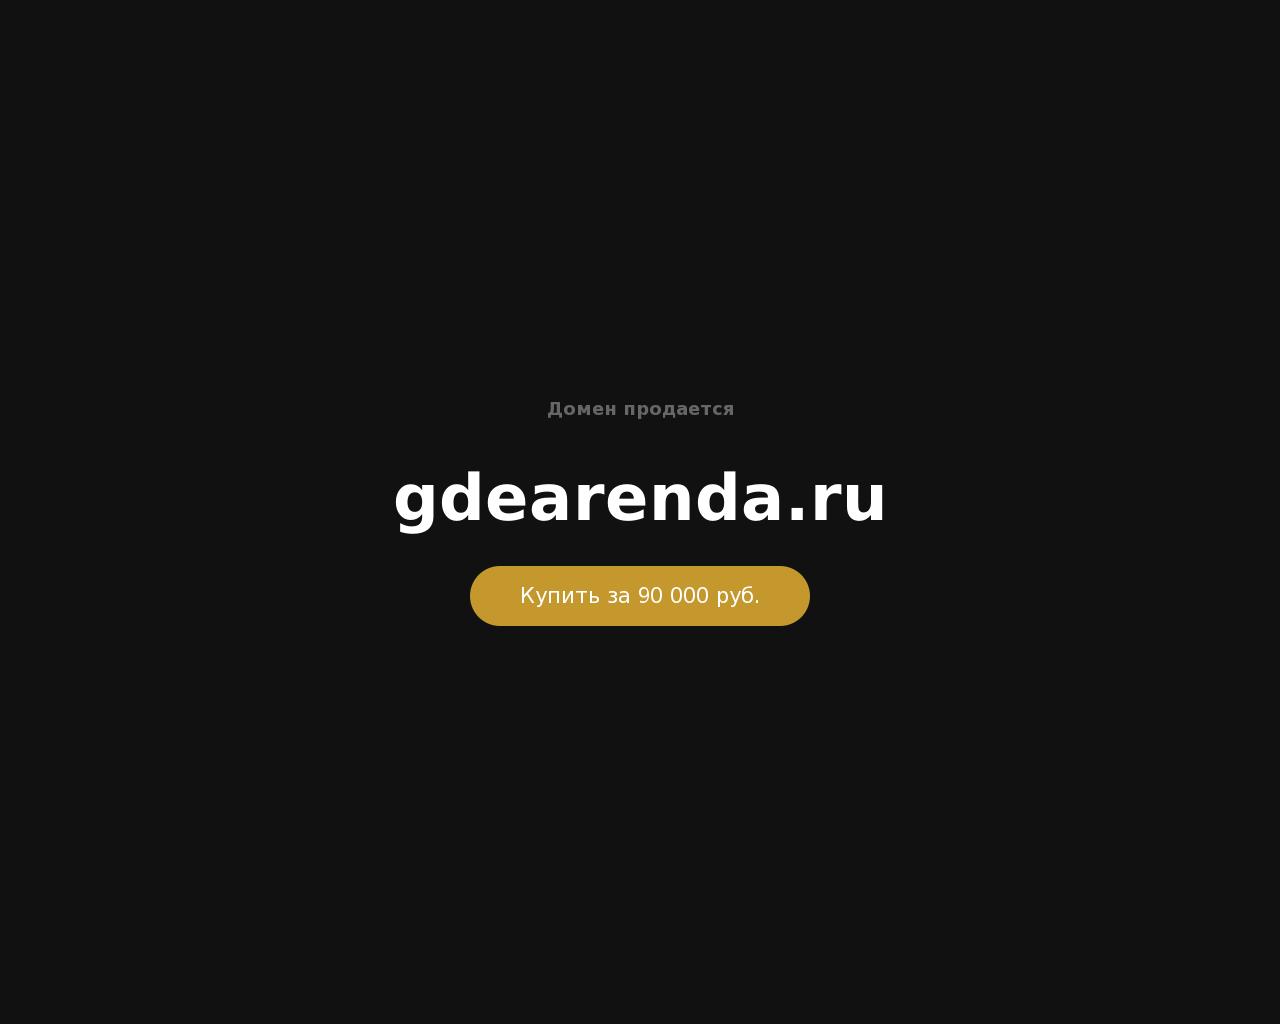 Изображение сайта gdearenda.ru в разрешении 1280x1024